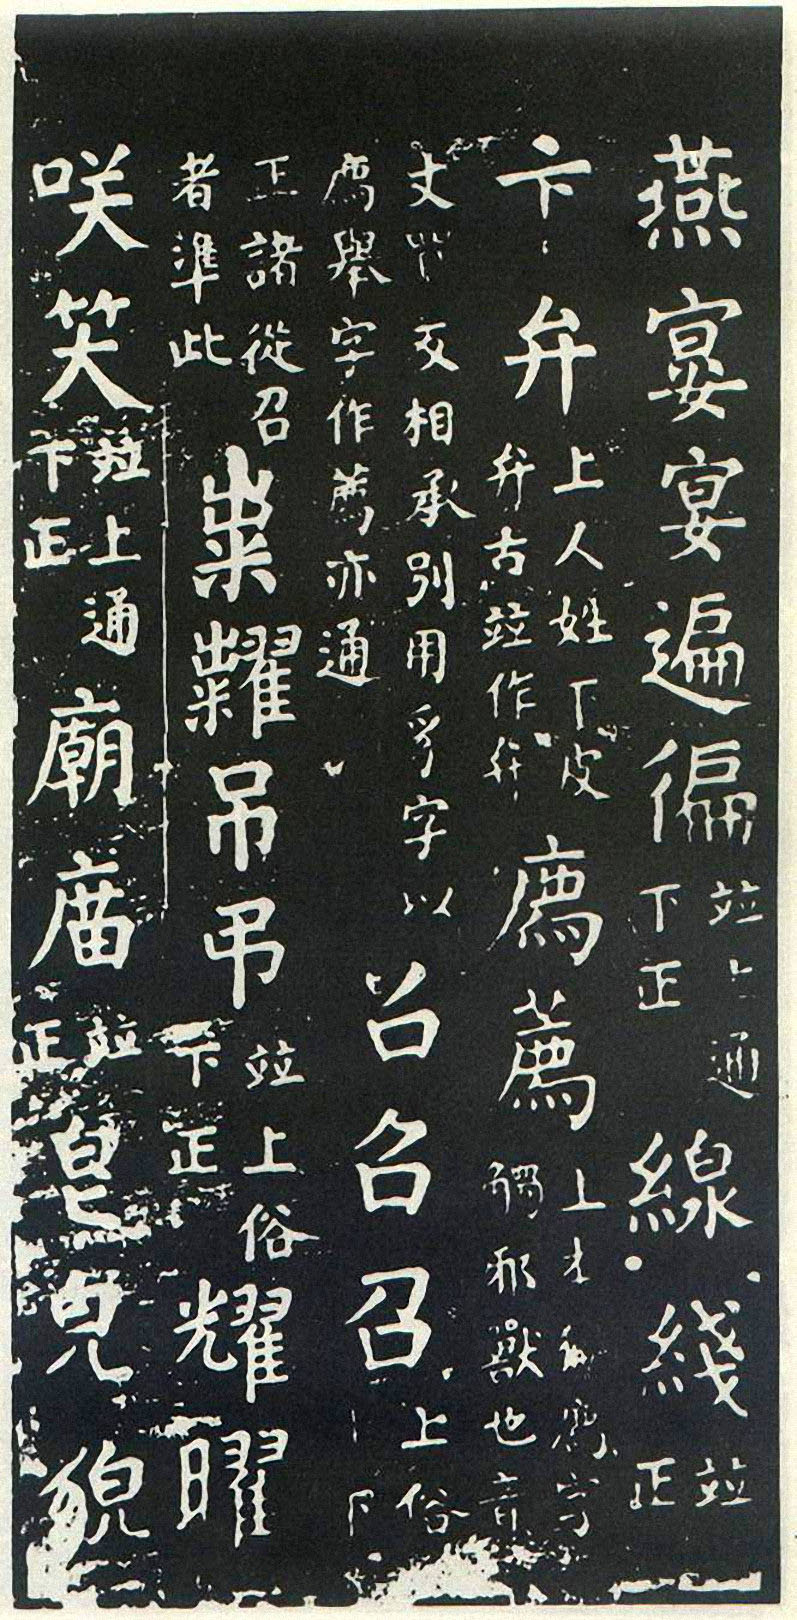 颜真卿楷书《干禄字书》-北京故宫博物院藏(图13)